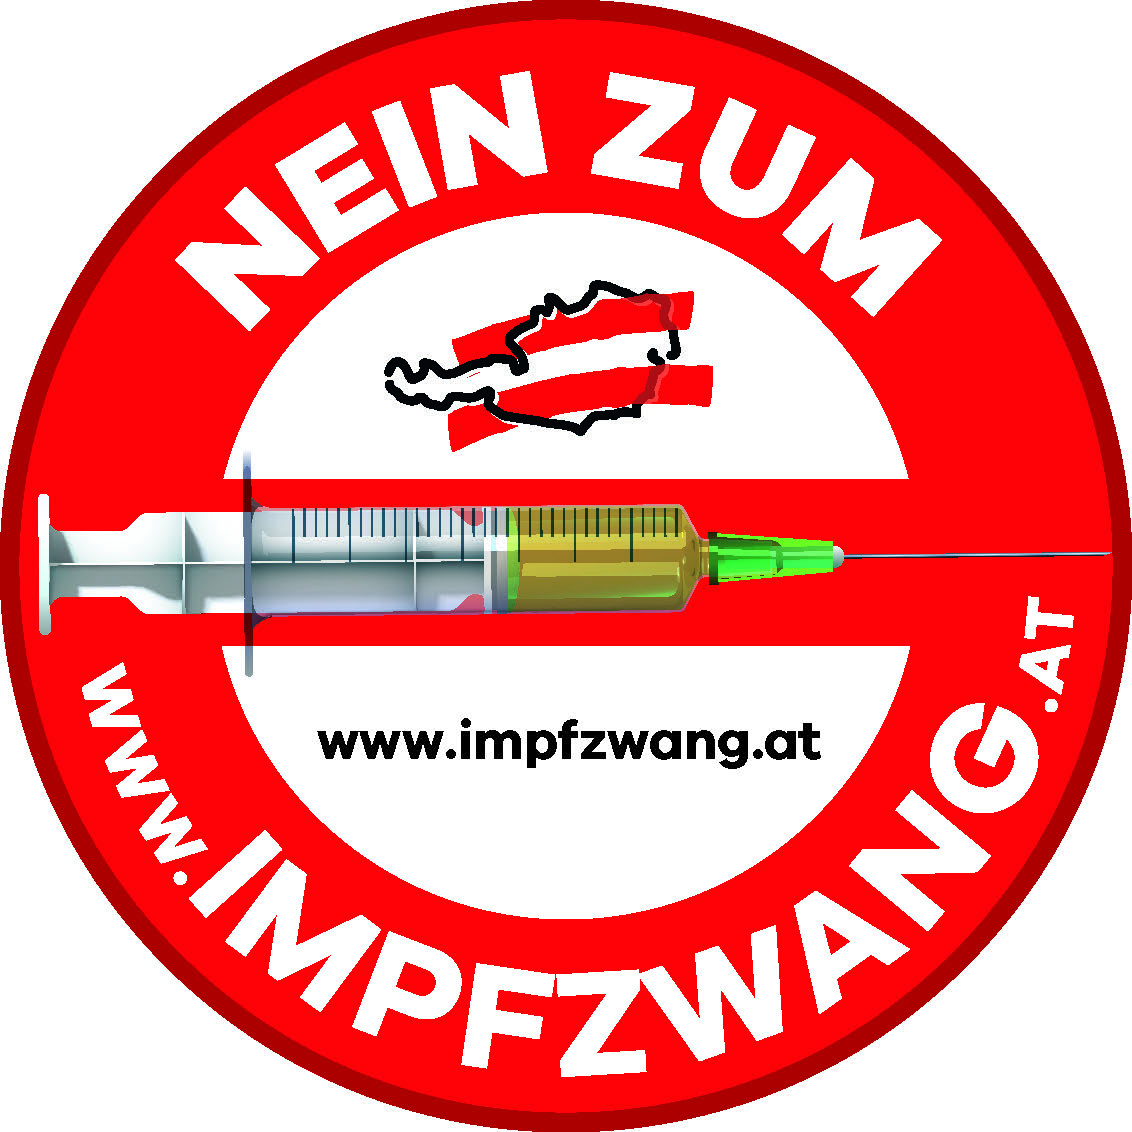 www.impfzwang.at